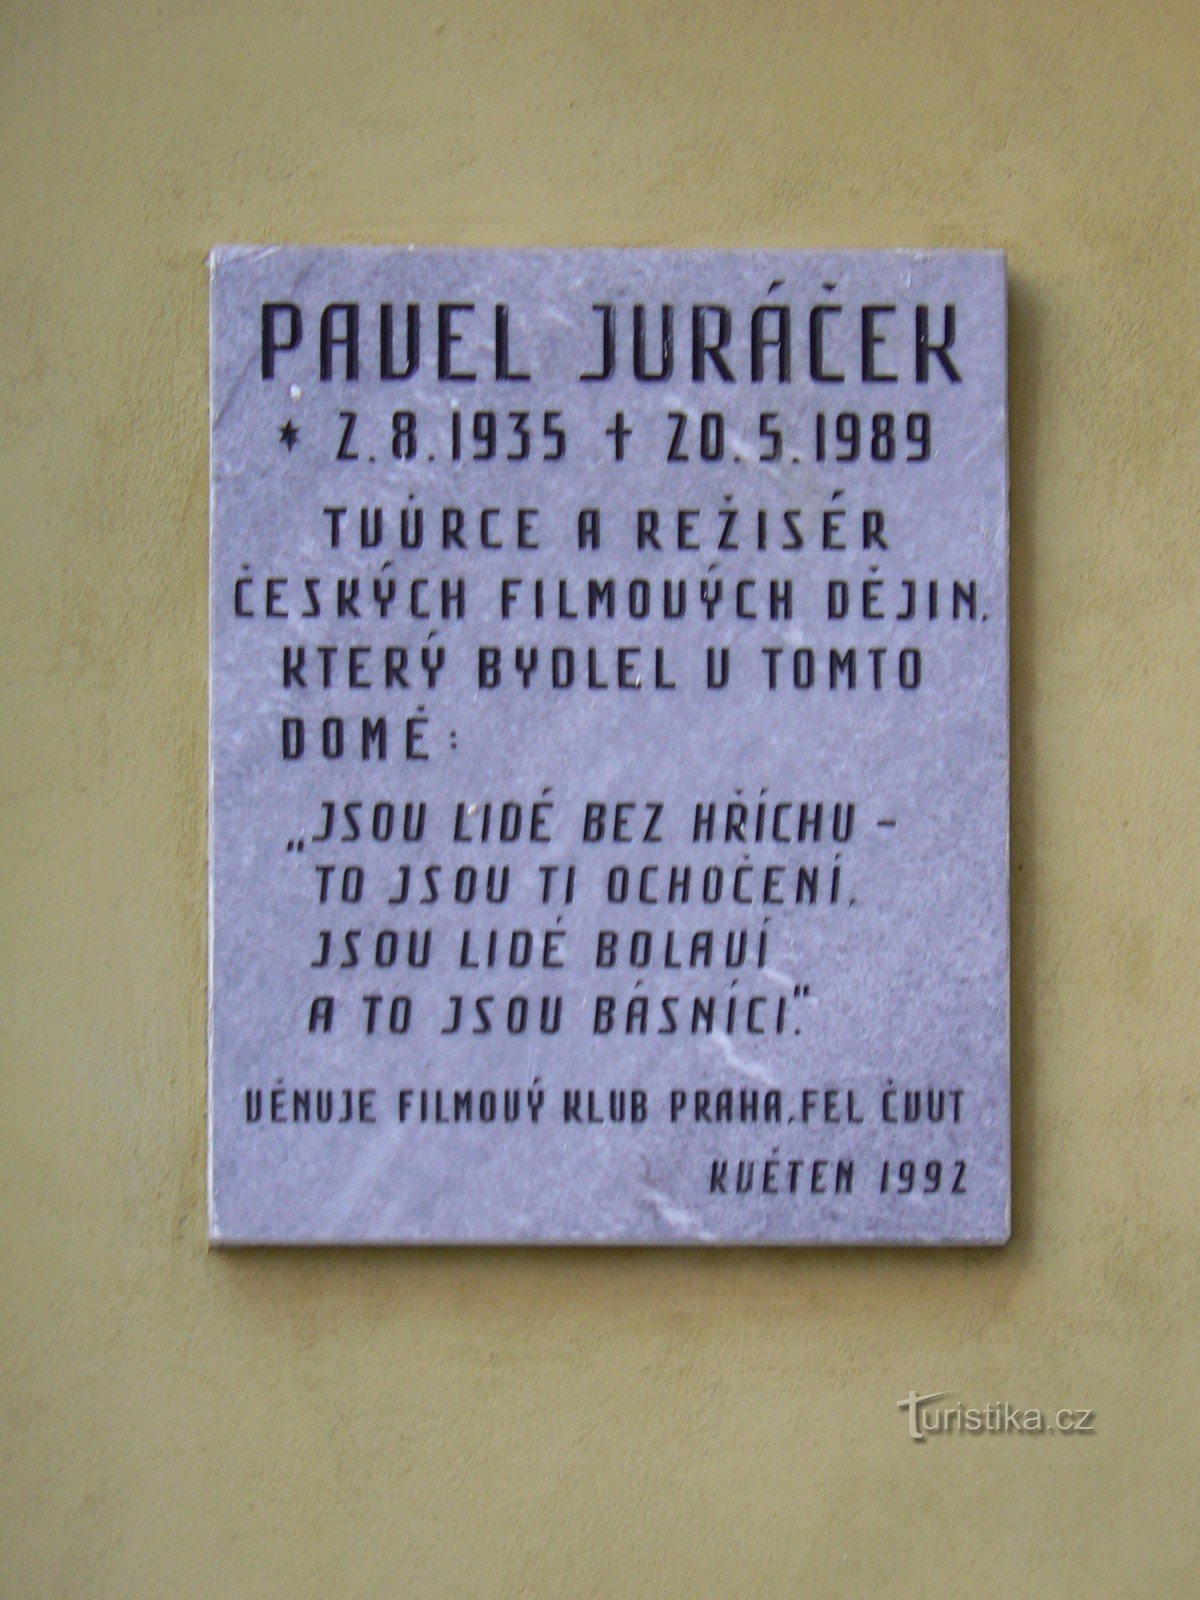 Pamětní deska Pavel Juráček